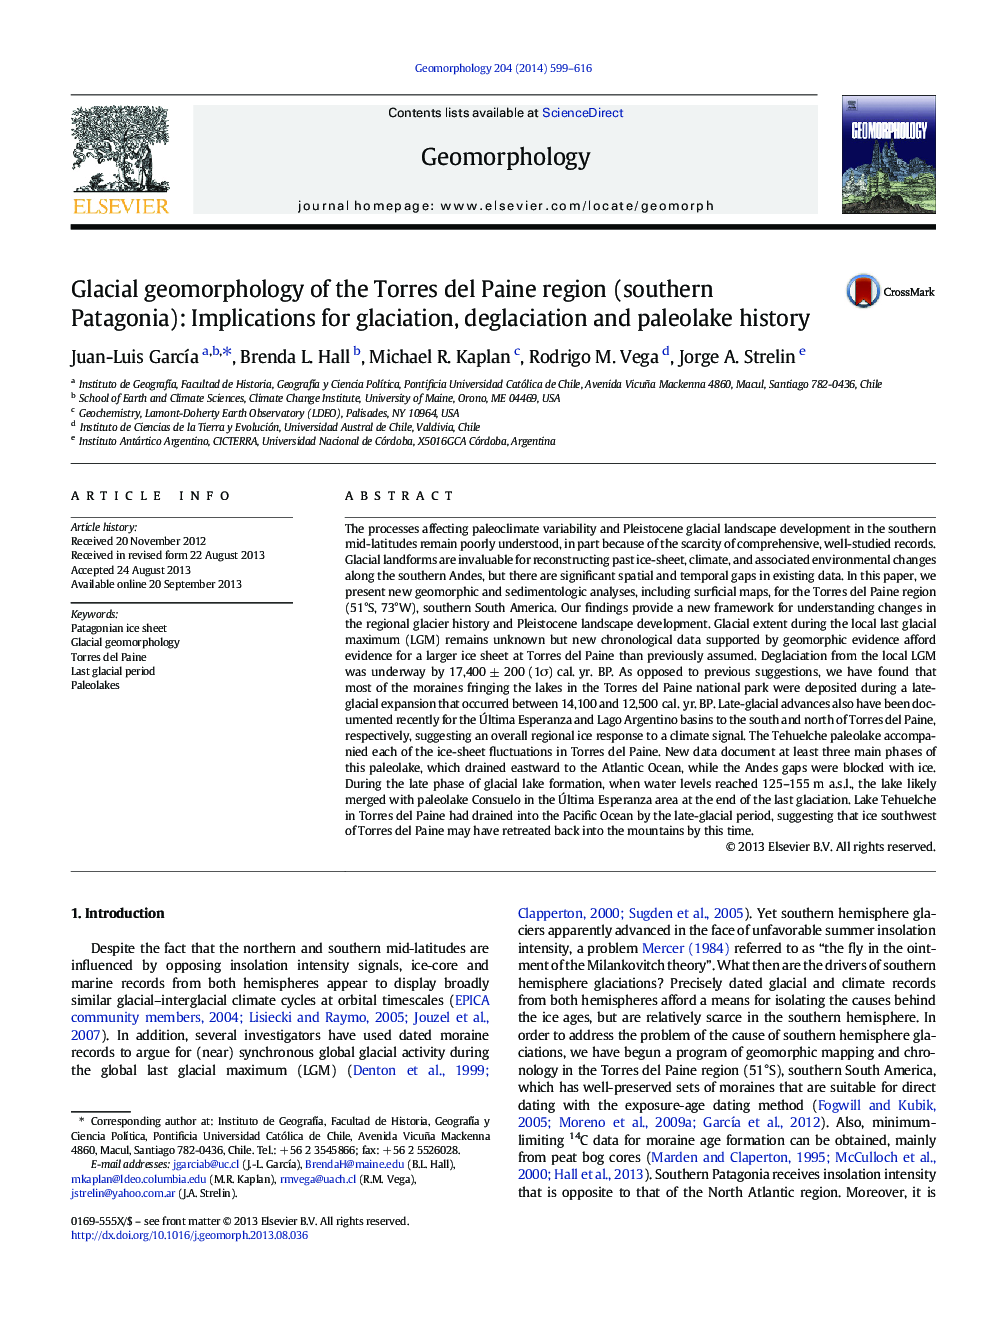 ژئومورفولوژی یخبندان منطقه تورس دلپین (جنوبی پاتاگونیا): تاثیرات بروز یخ زدگی، انجماد و تاریخ پالئولیک 